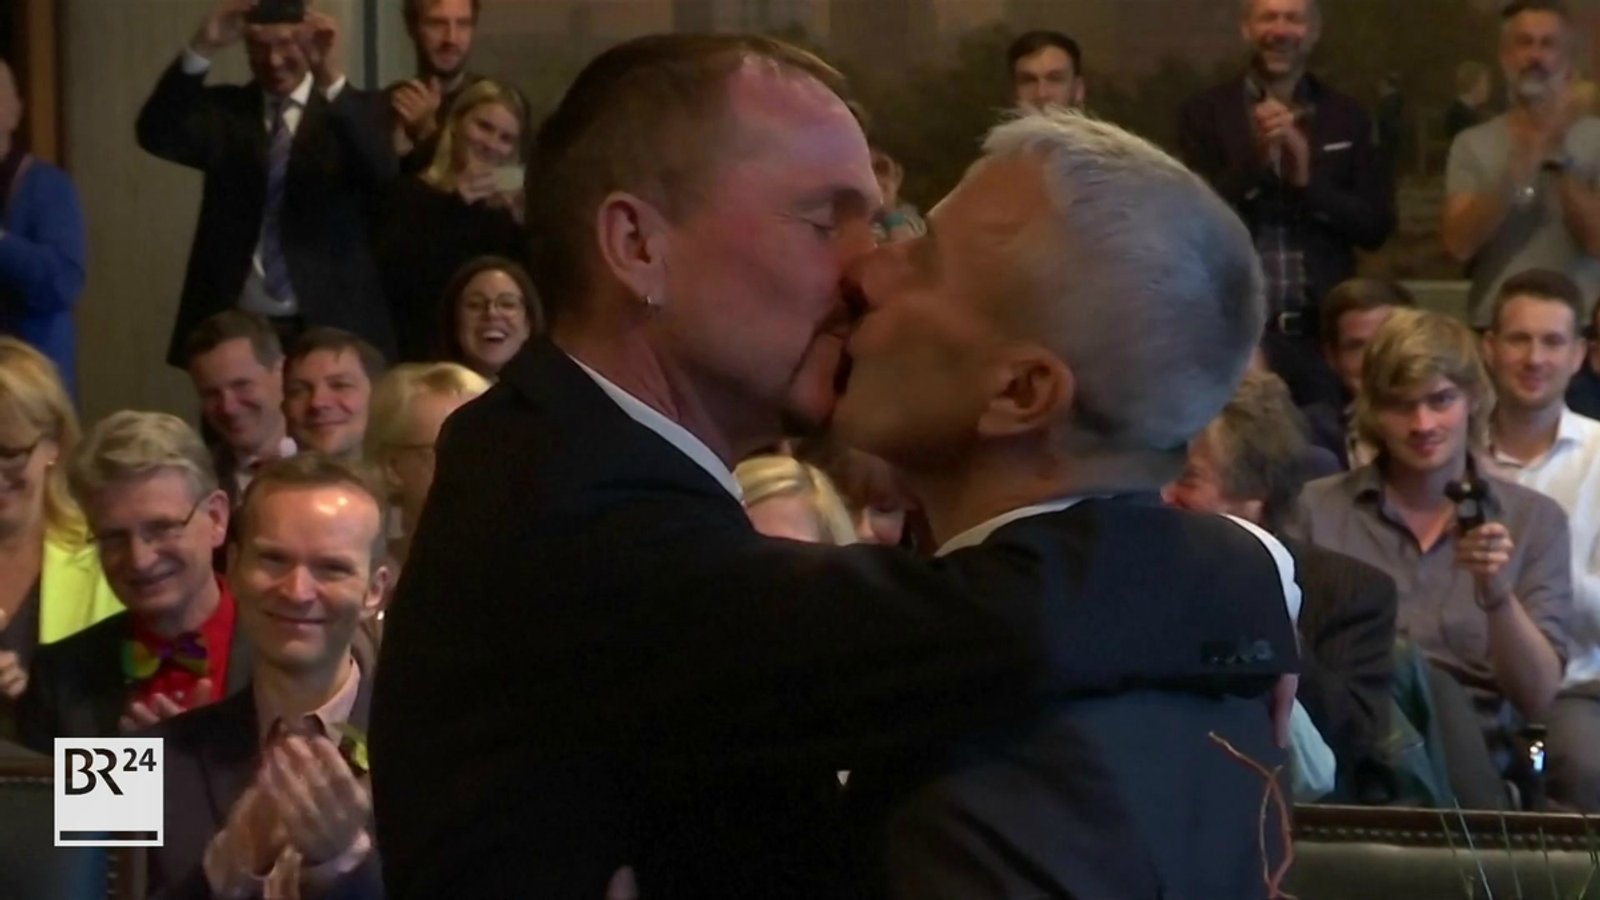 "Ehe für alle": Erste homosexuelle Hochzeit in Deutschland